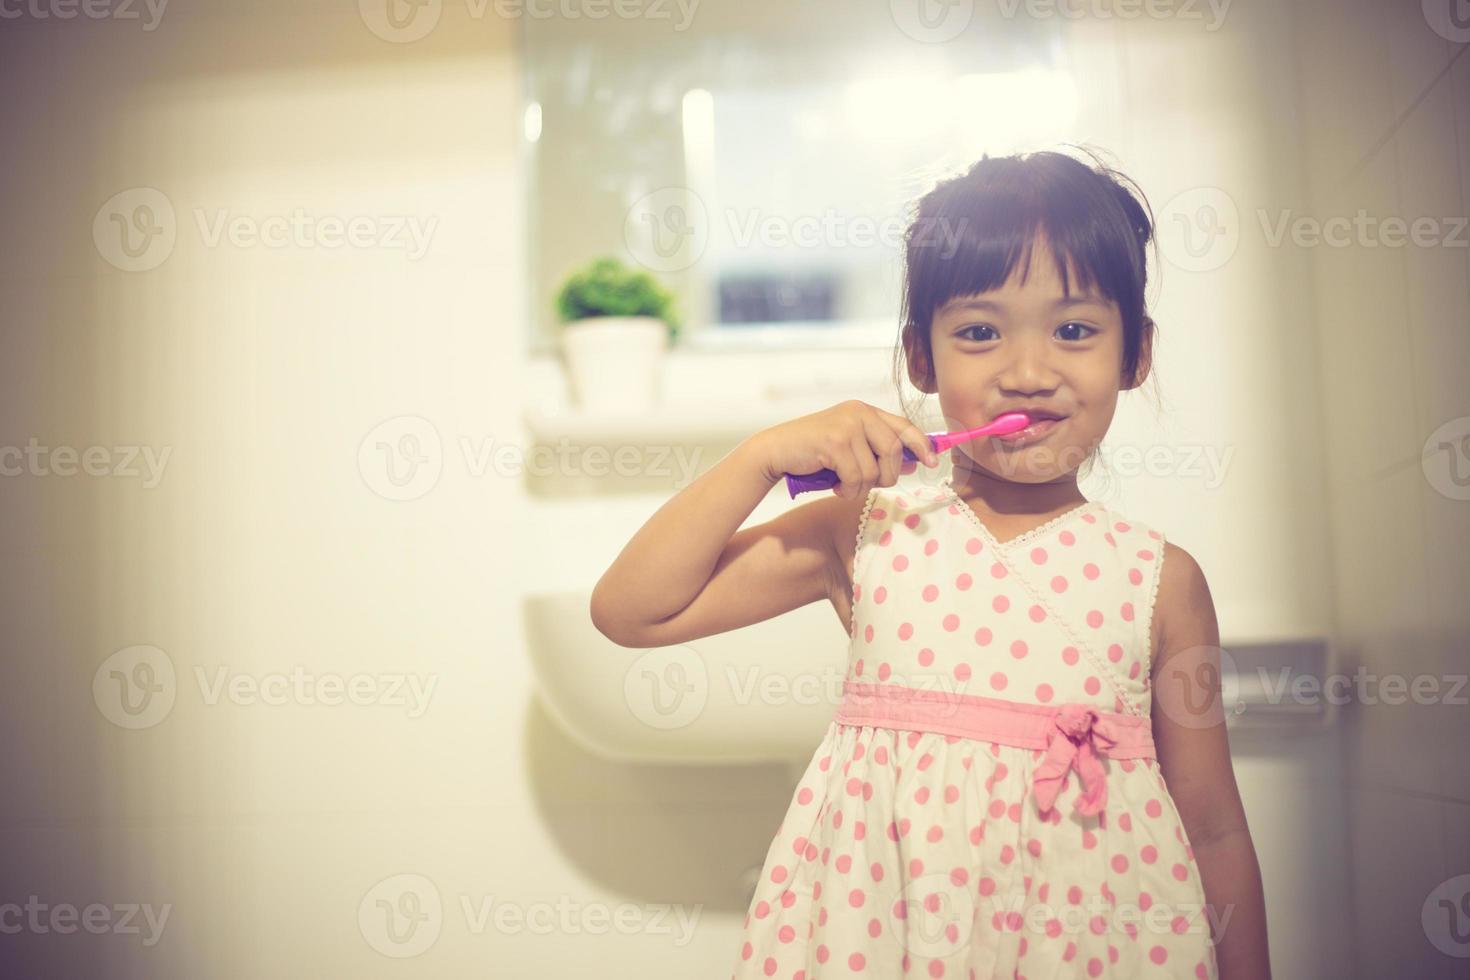 niñita linda limpiándose los dientes con cepillo de dientes en el baño foto